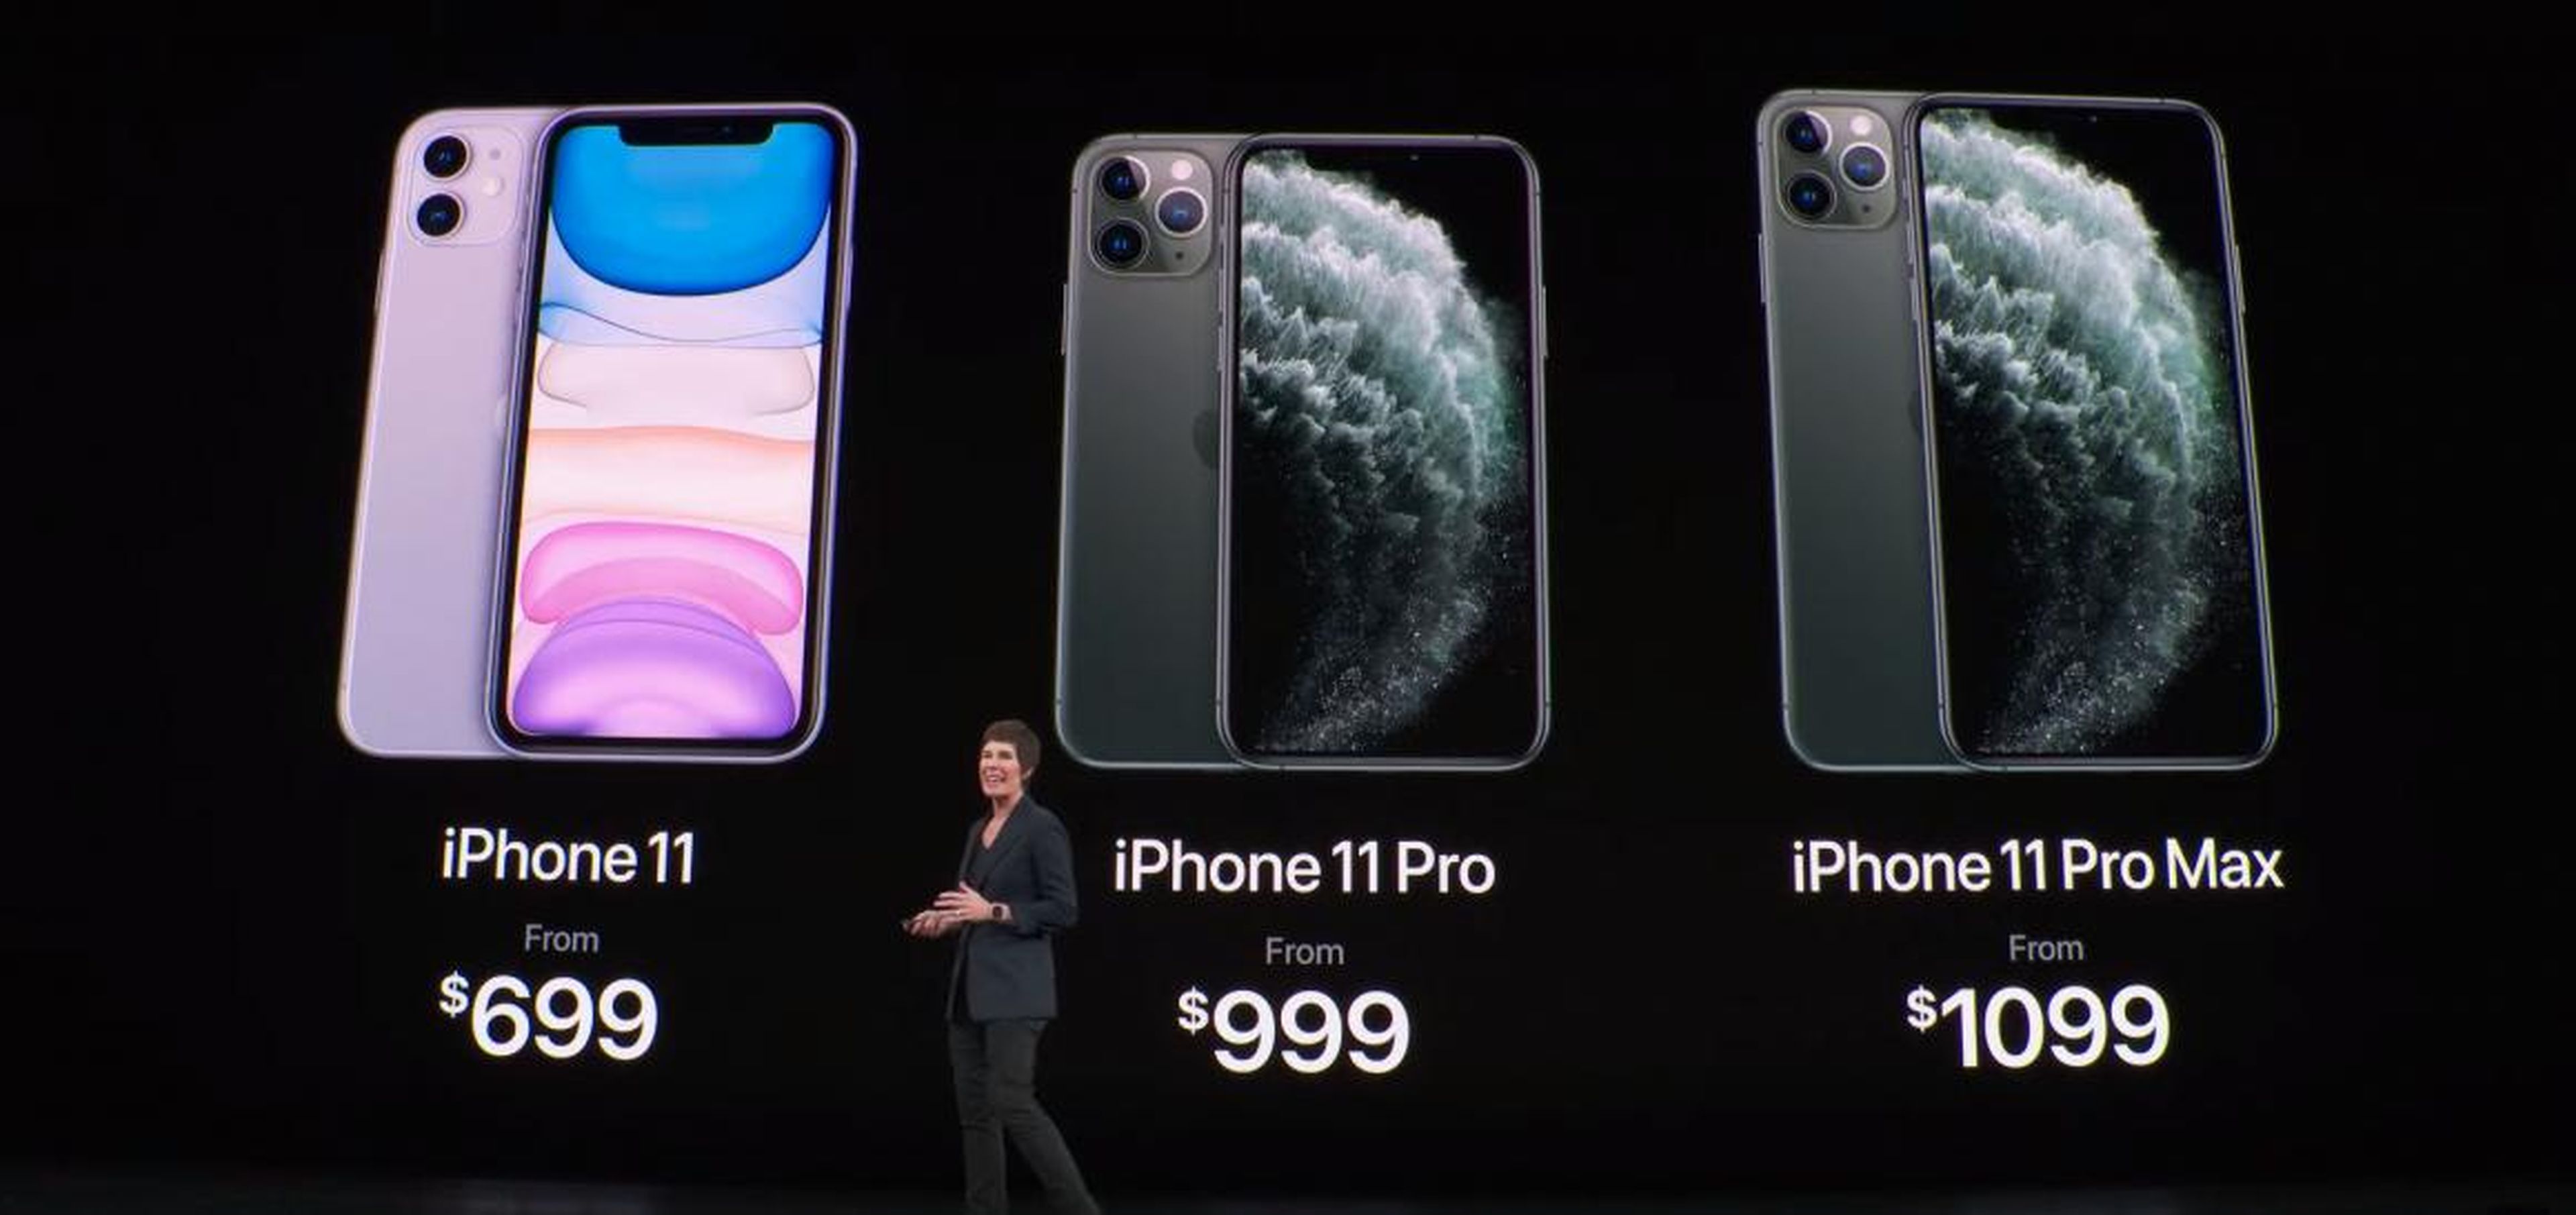 1. El iPhone 11 es sensiblemente más barato que los dos modelos de iPhone 11 Pro